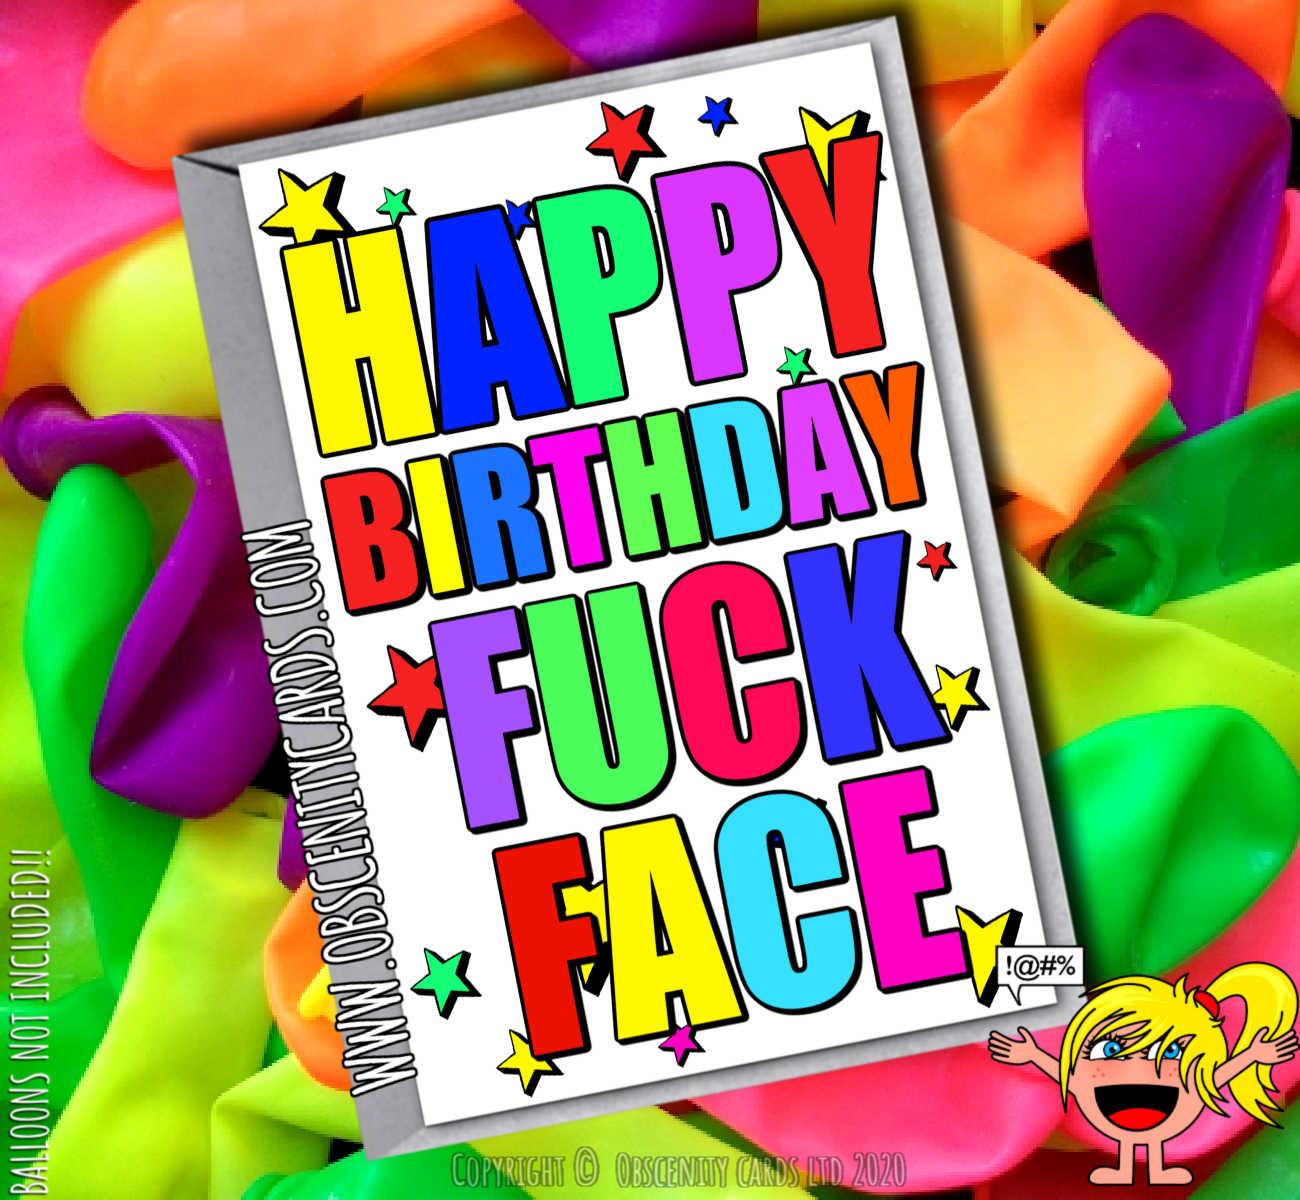 HAPPY BIRTHDAY FUCK FACE FUNNY CARD